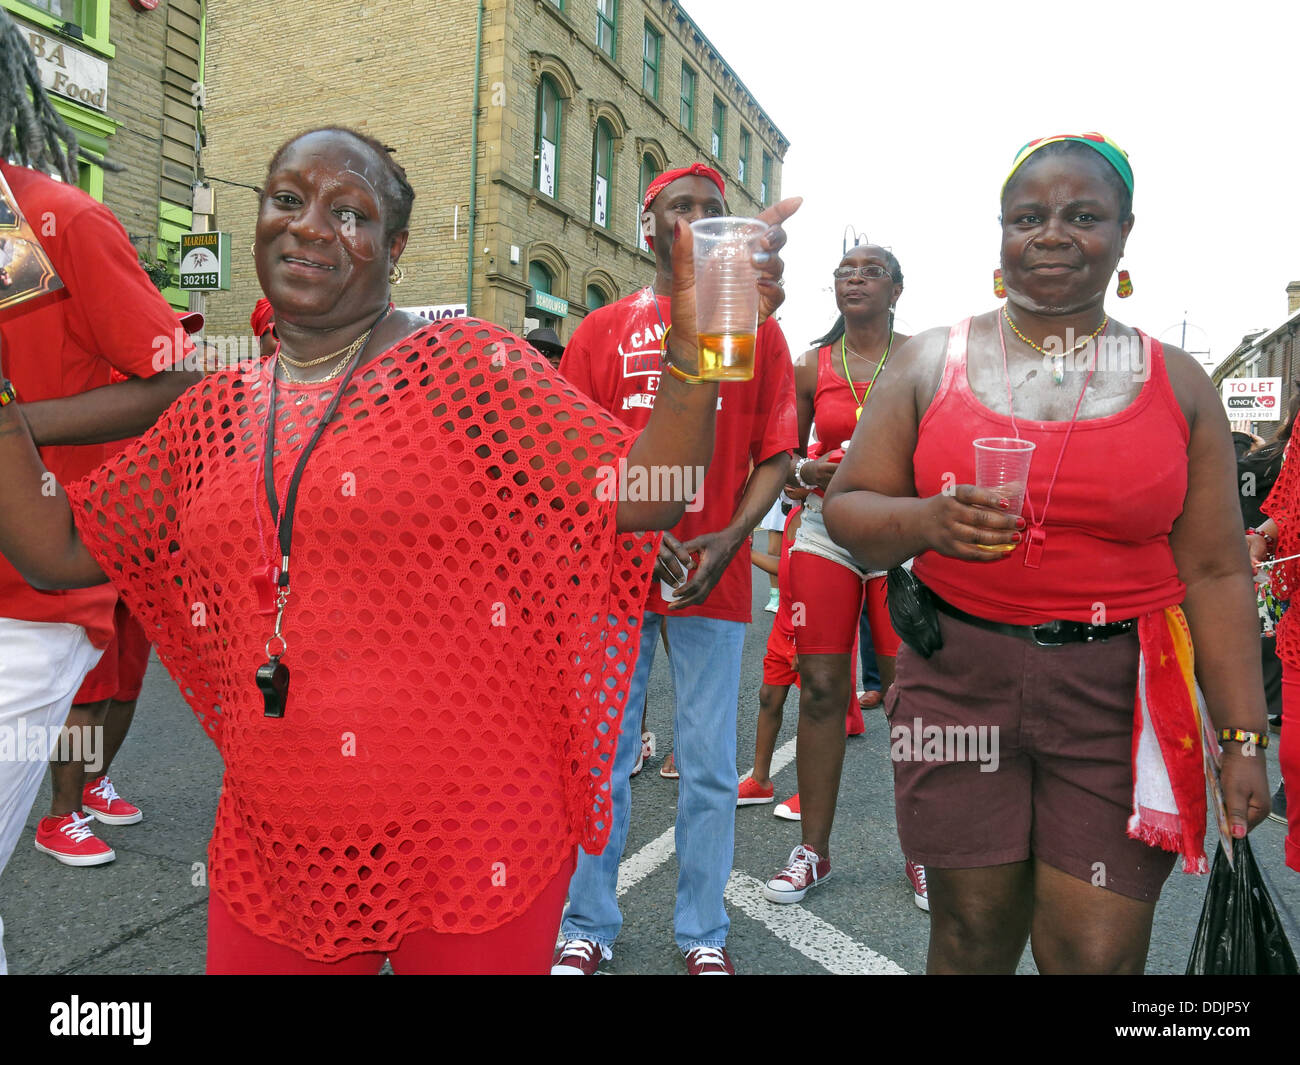 Kostümierte Tänzer in rot von Huddersfield Karneval 2013 Afrika Karibik Parade Straßenfest Stockfoto